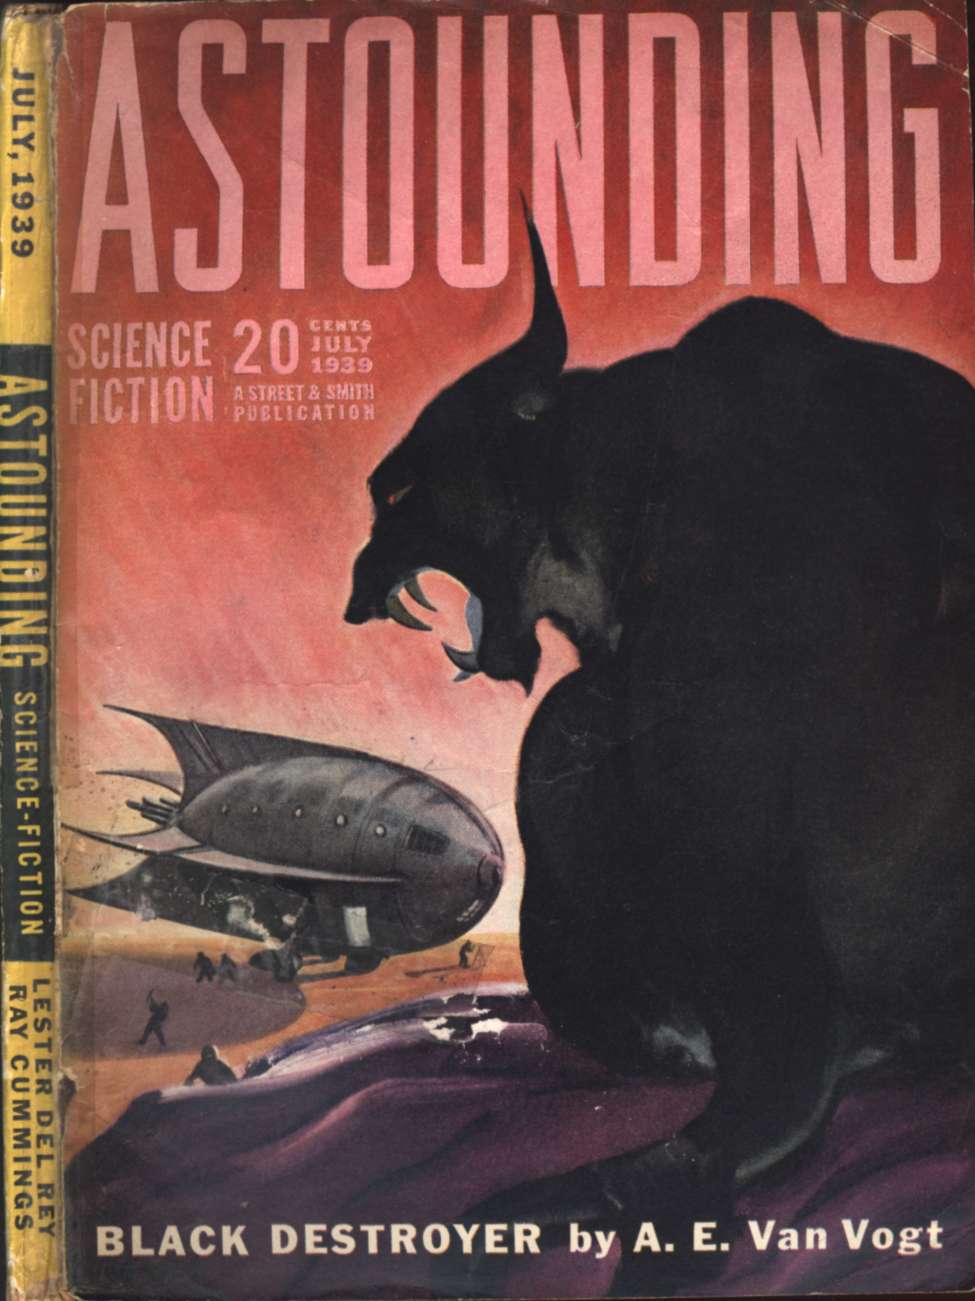 Comic Book Cover For Astounding v23 5 - Black Destroyer - A. E. van Vogt